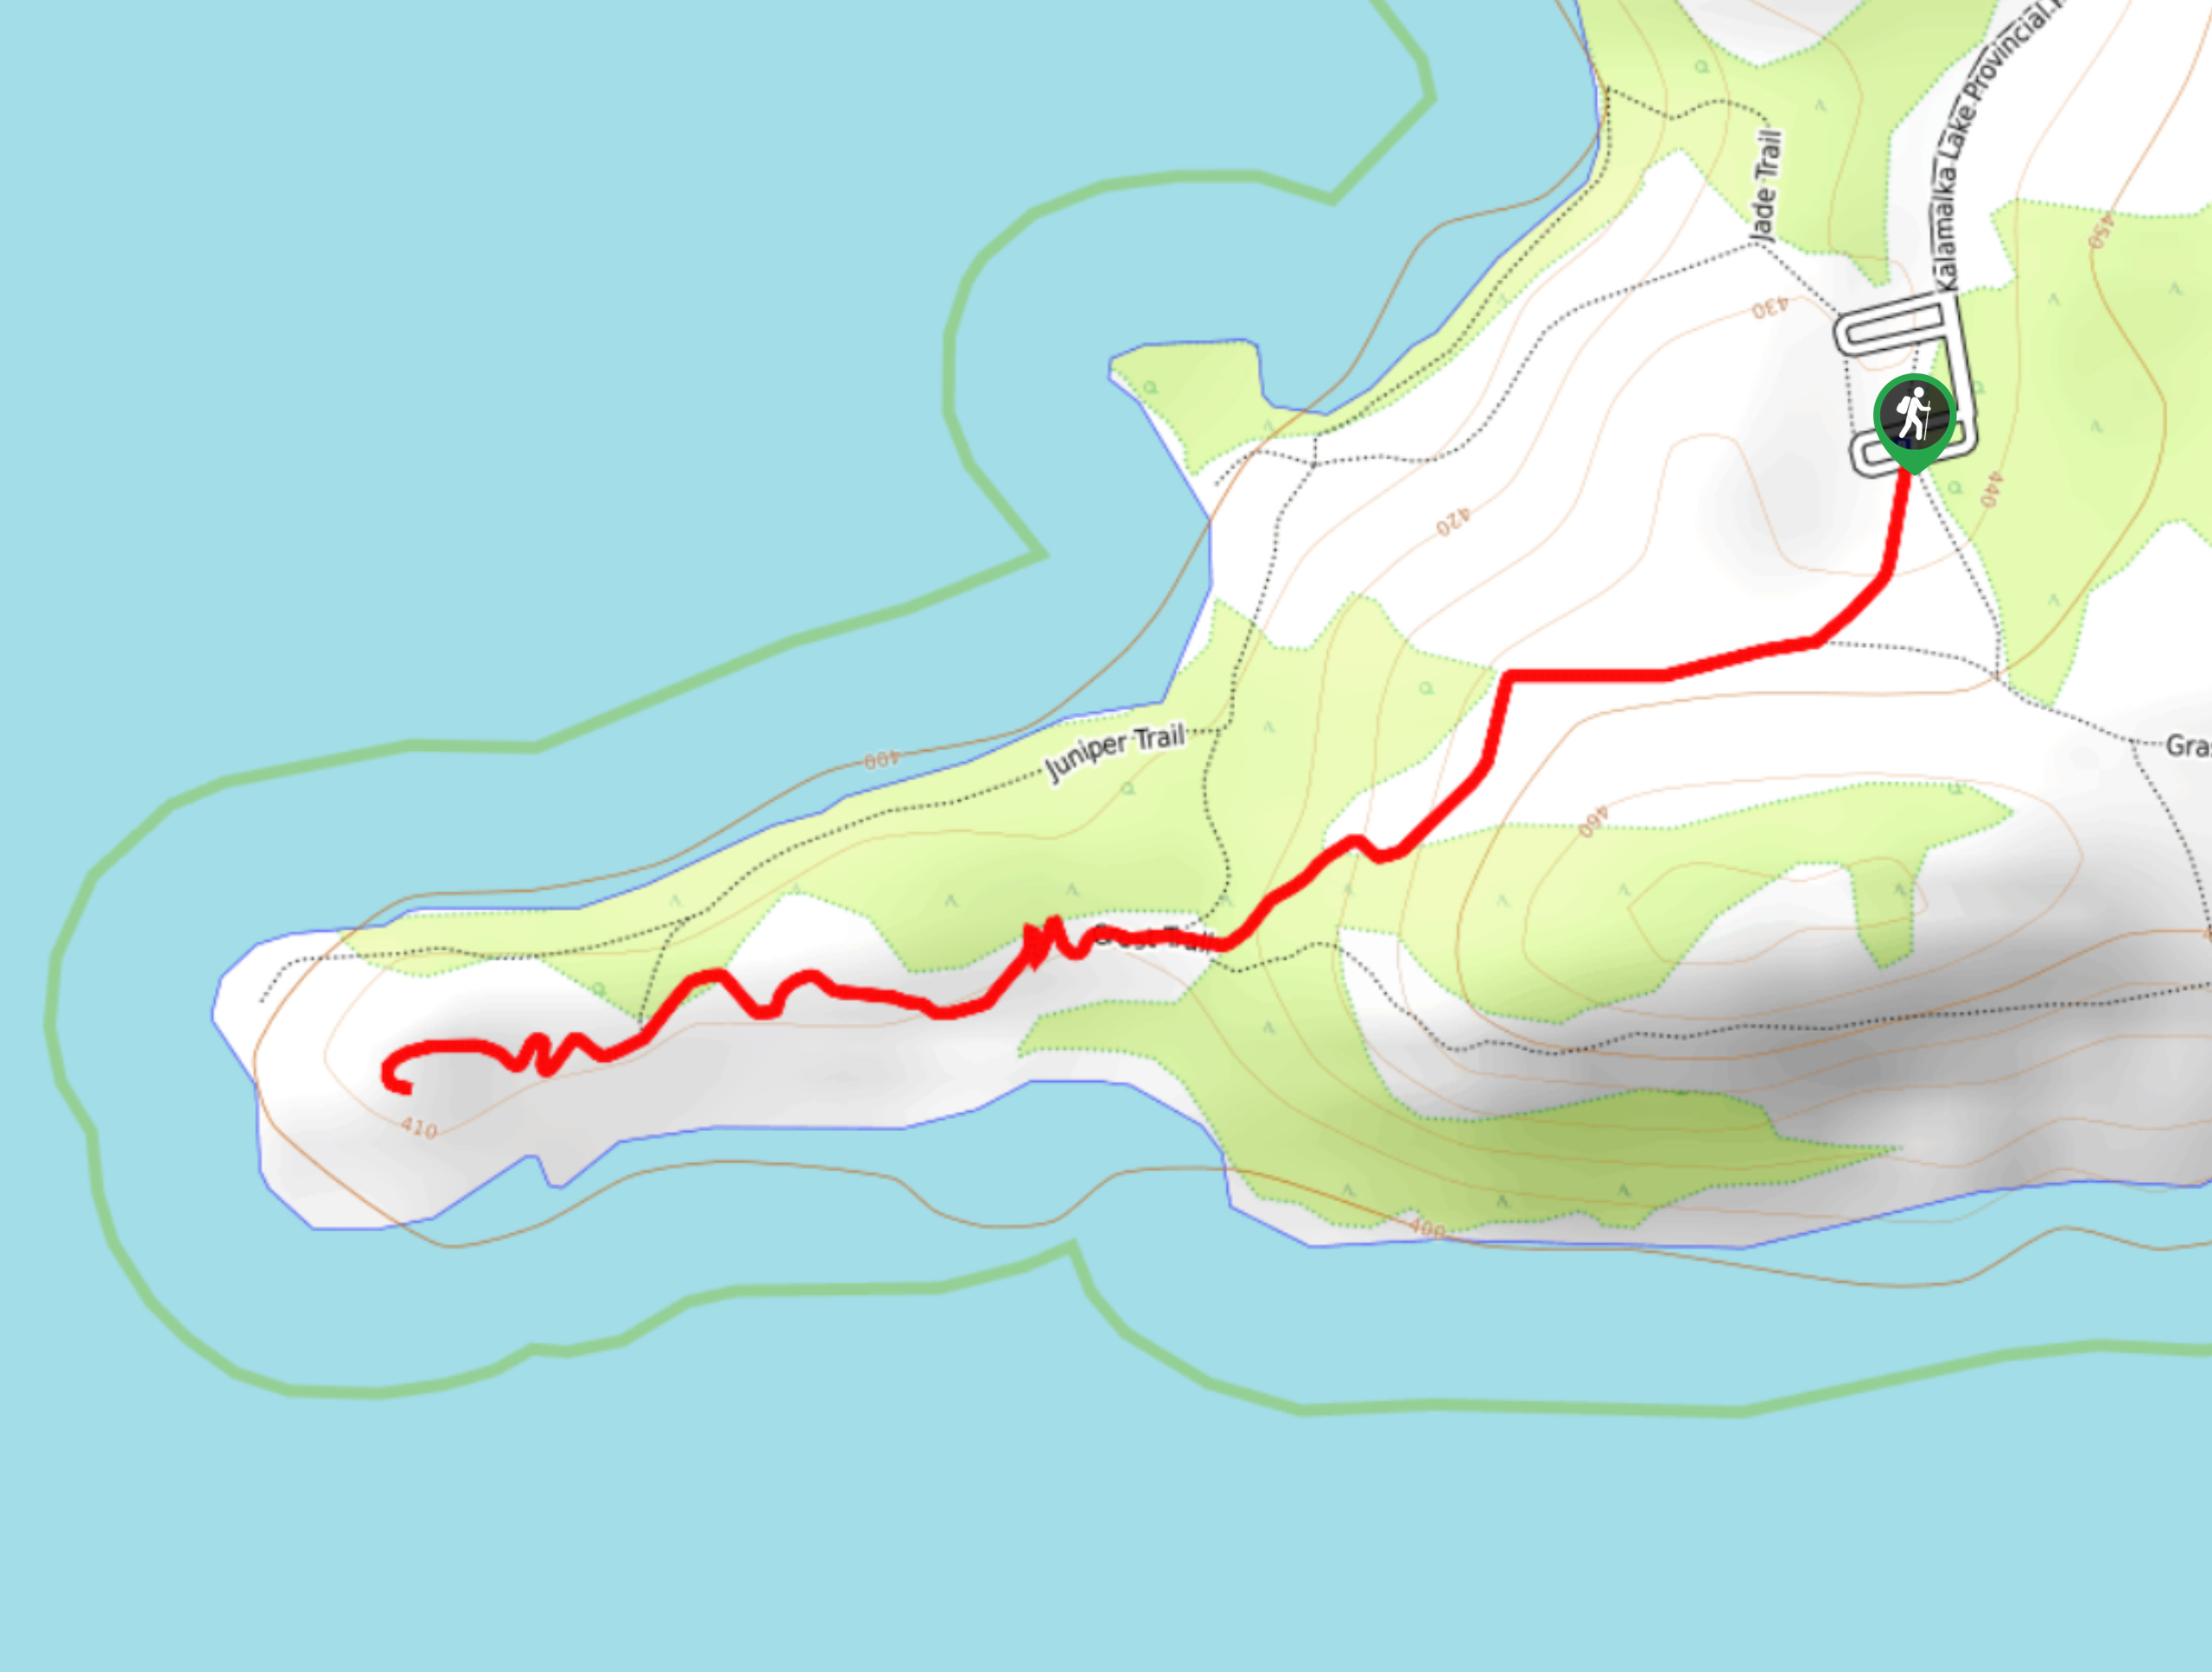 Rattlesnake Point Trail Map